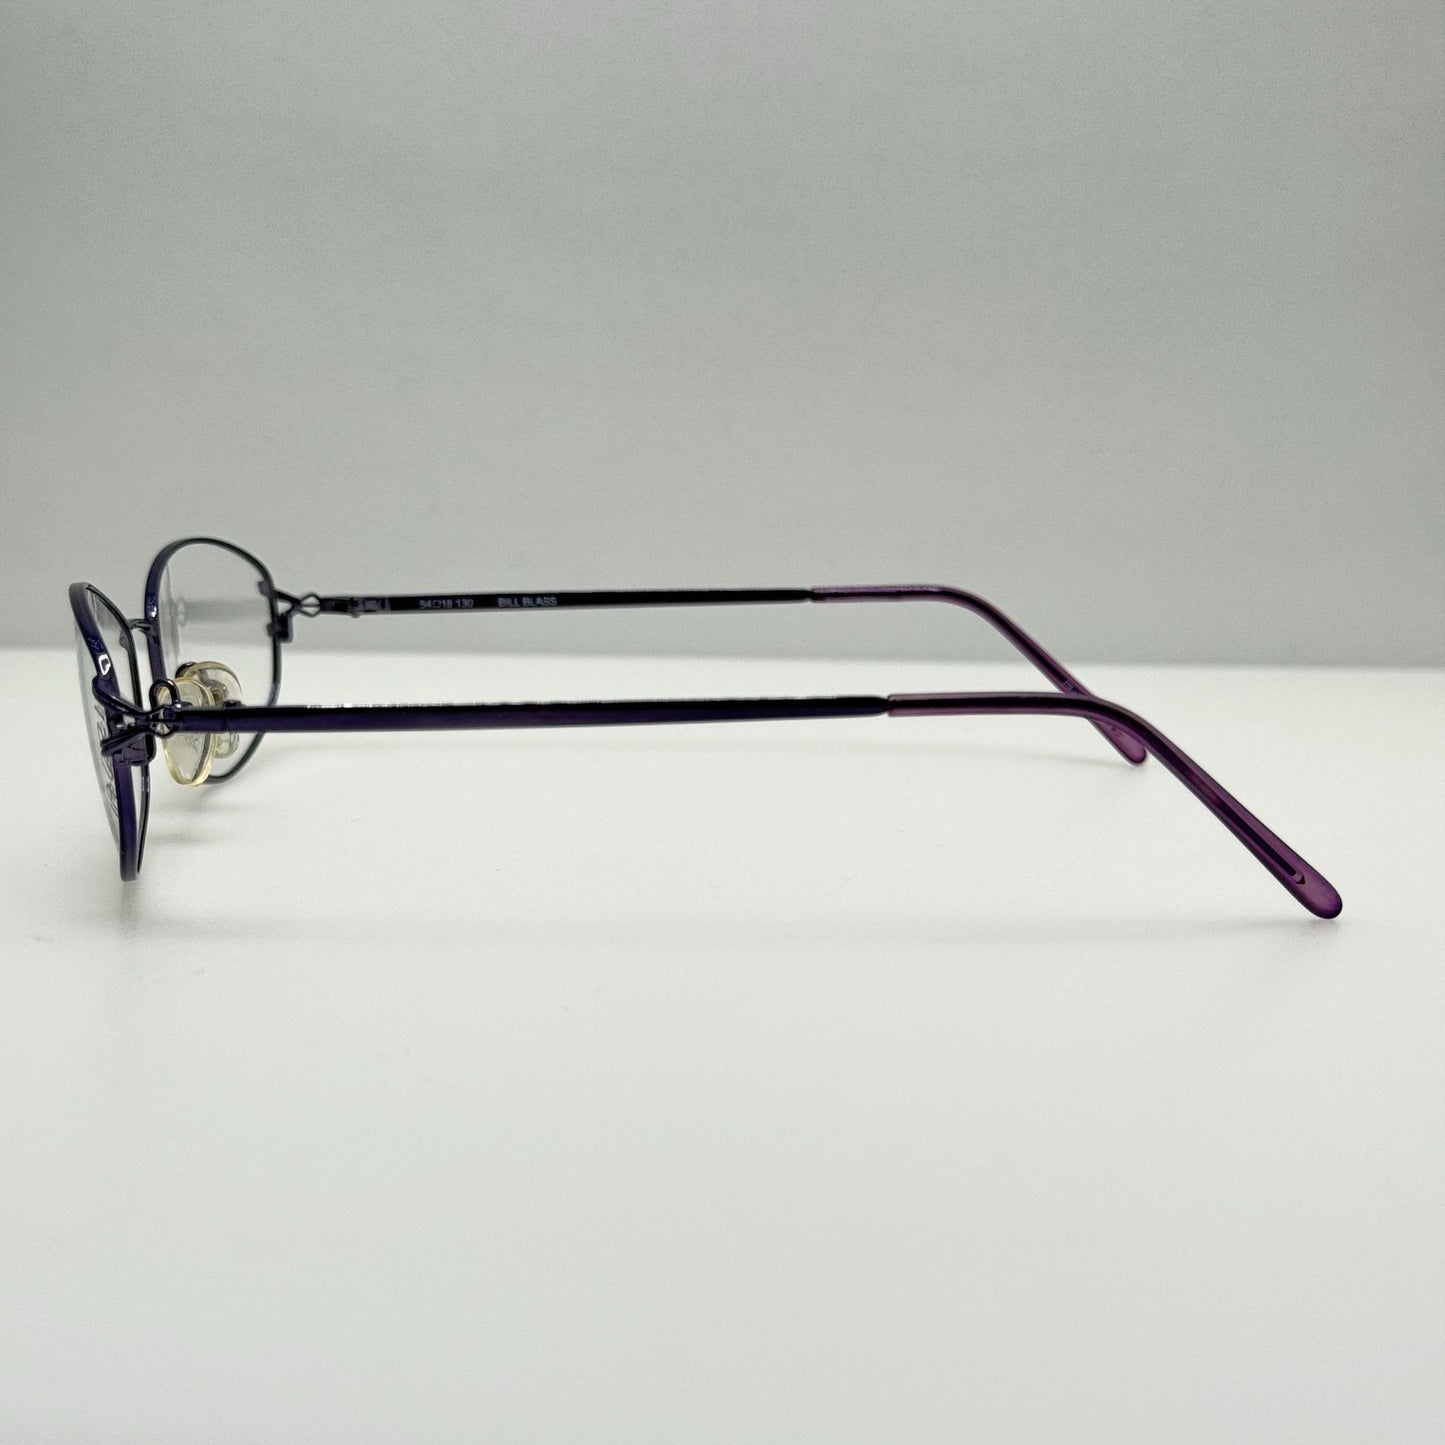 Bill Blass Eyeglasses Eye Glasses Frames BB 925 3 54-18-130